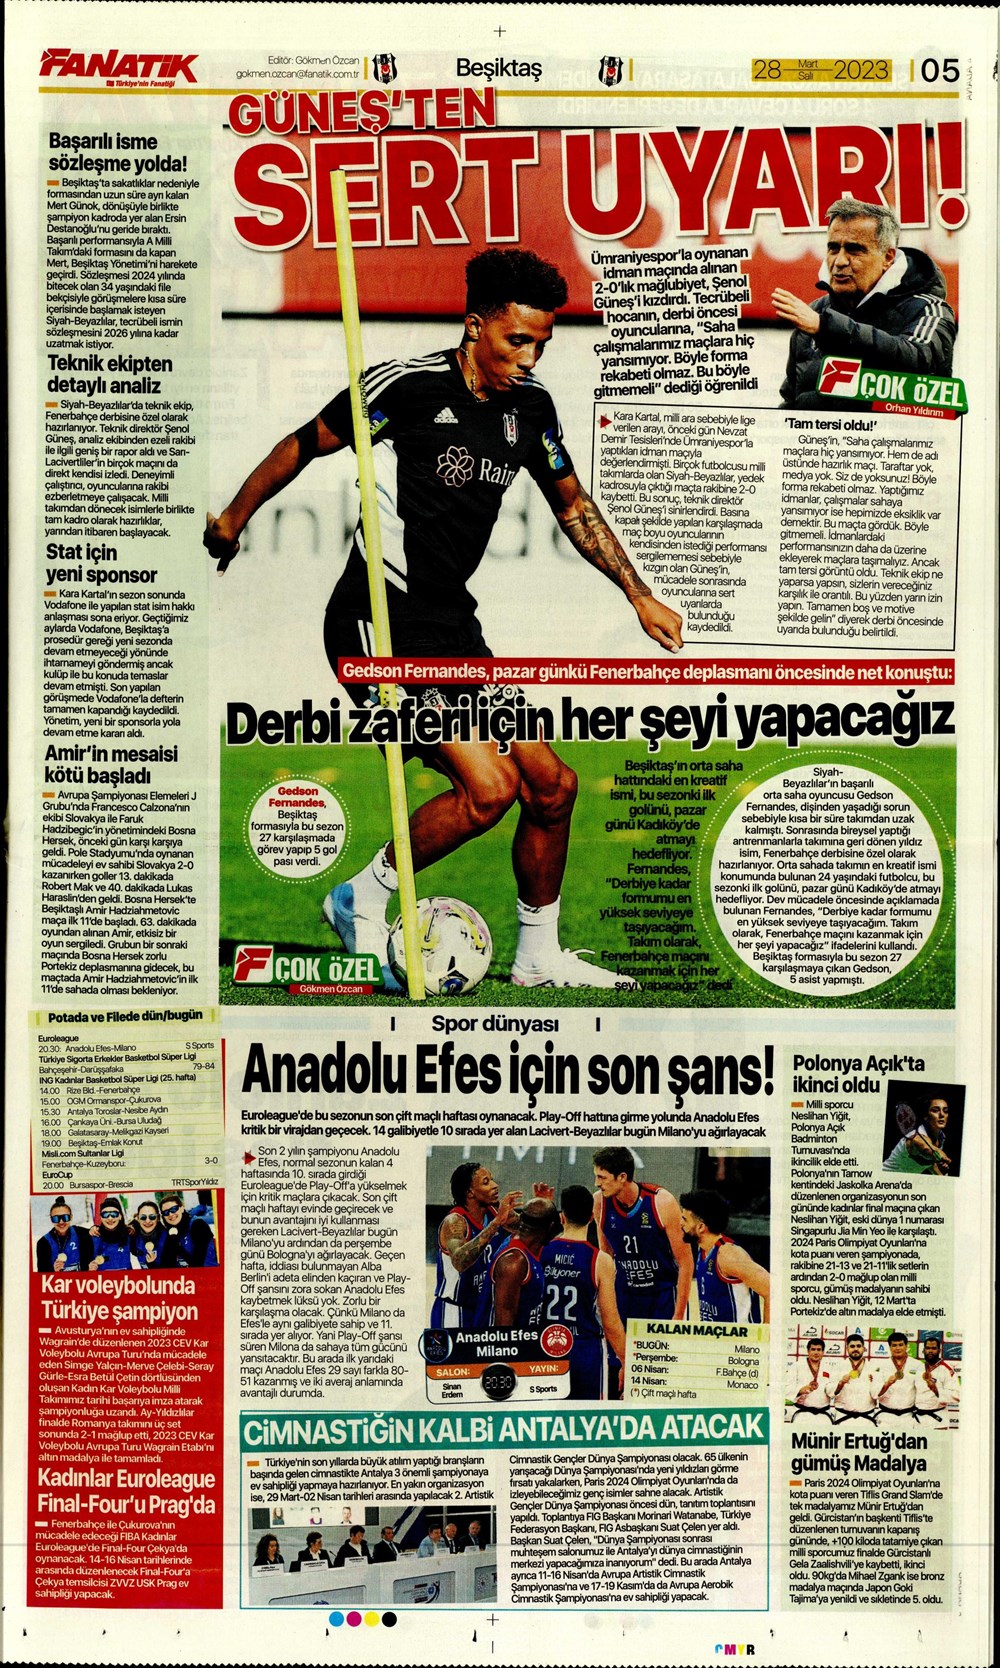 "Vurduğumuz gol olsun" - Sporun manşetleri - 8. Foto